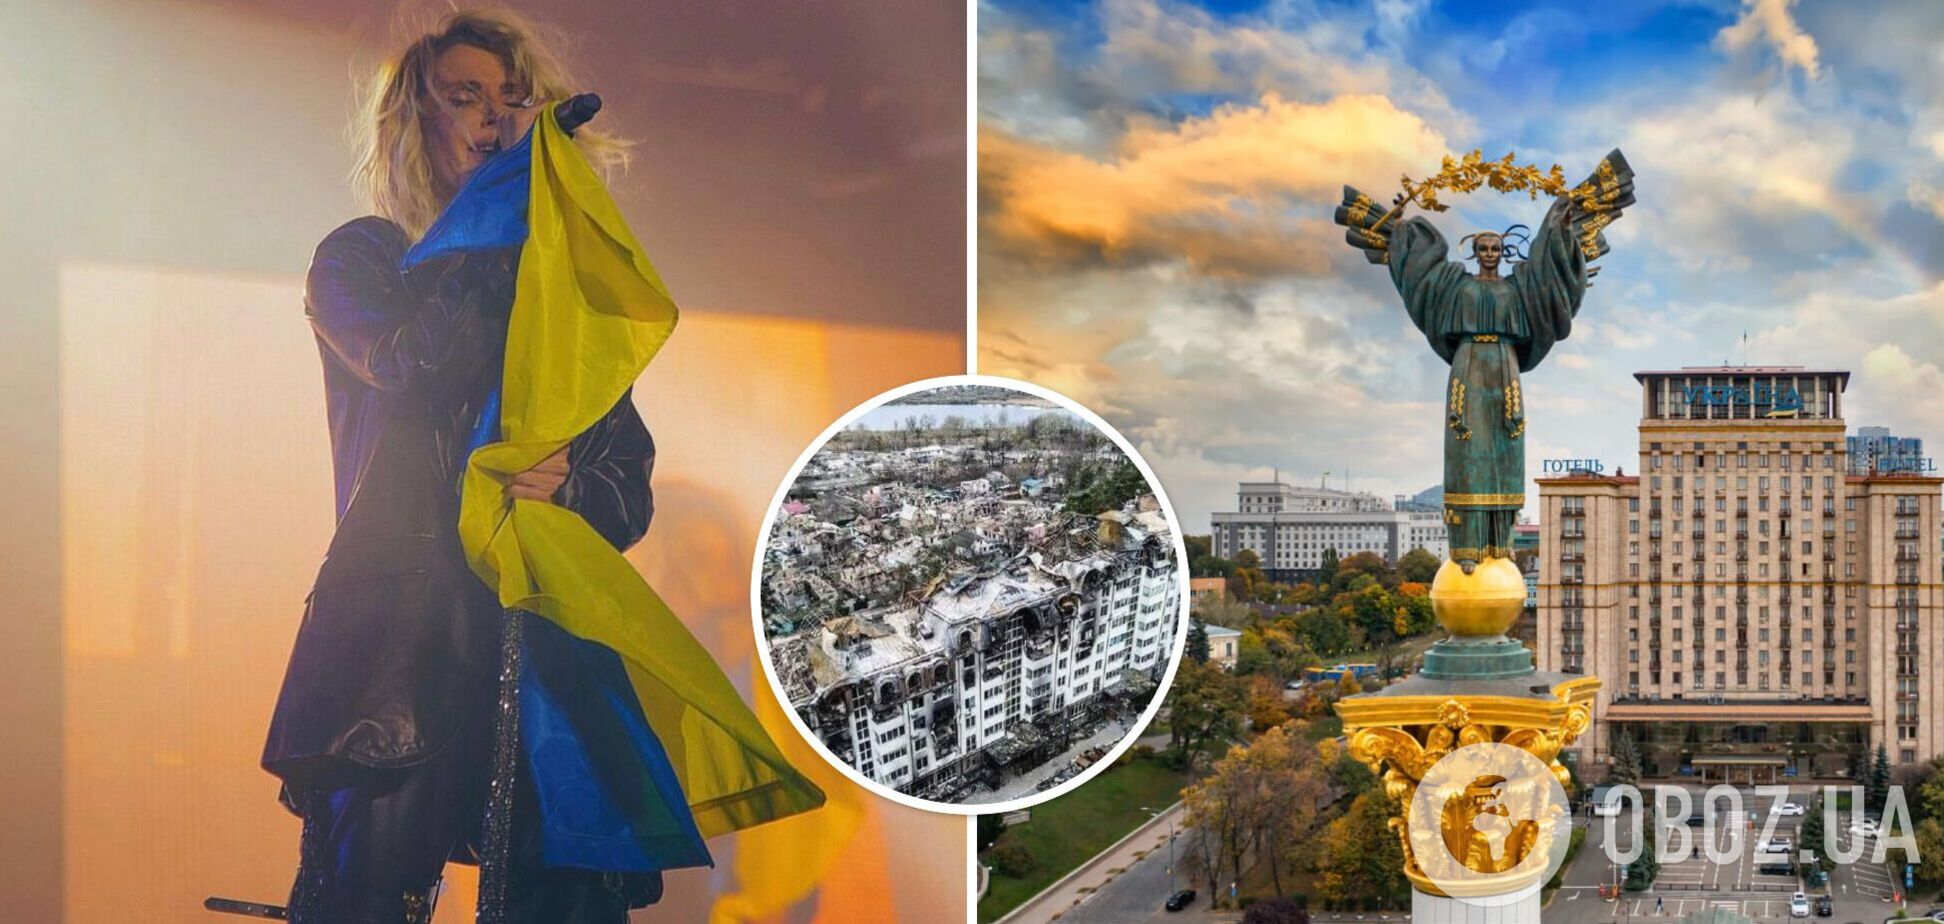 'Стали едины как никогда': Лобода перевела 14 млн гривен на помощь украинцам 